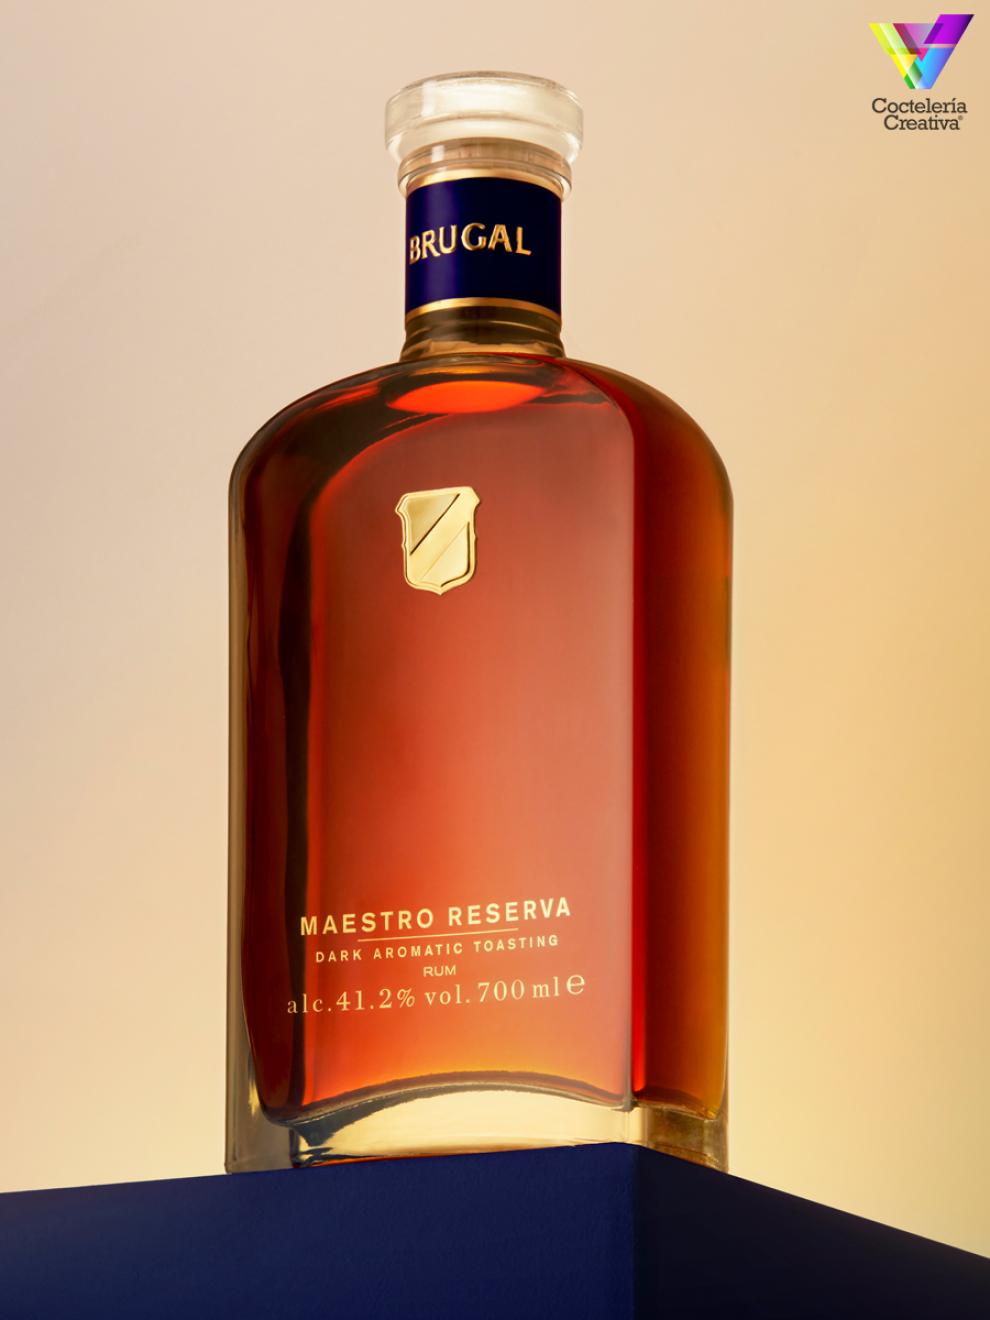 botella de Brugarl Maestro Reserva